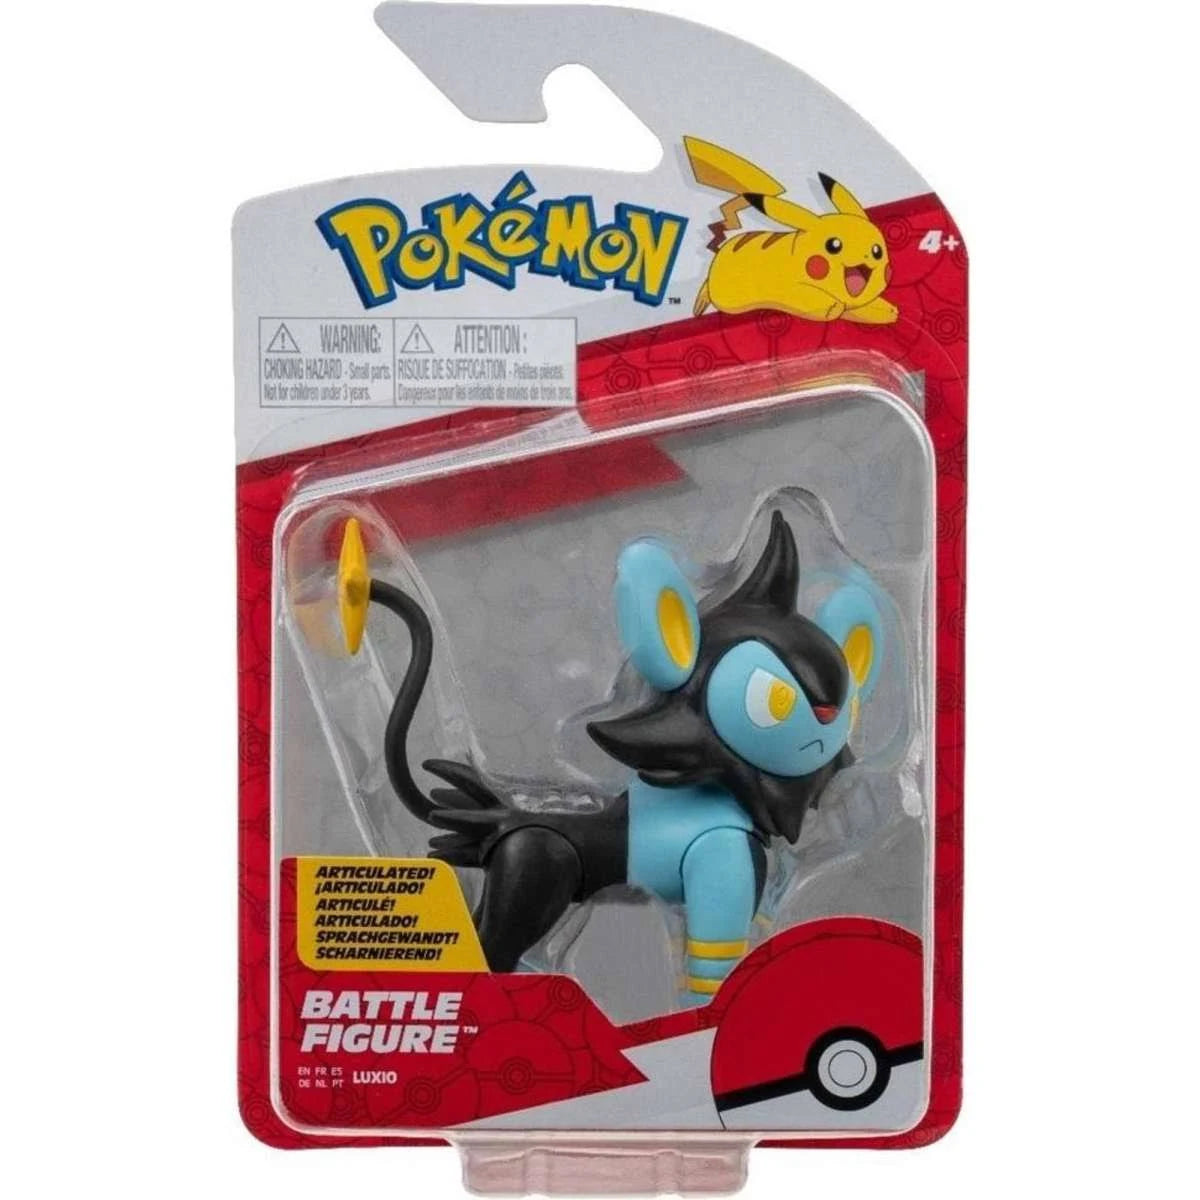 Pokémon Battle Figure Pack